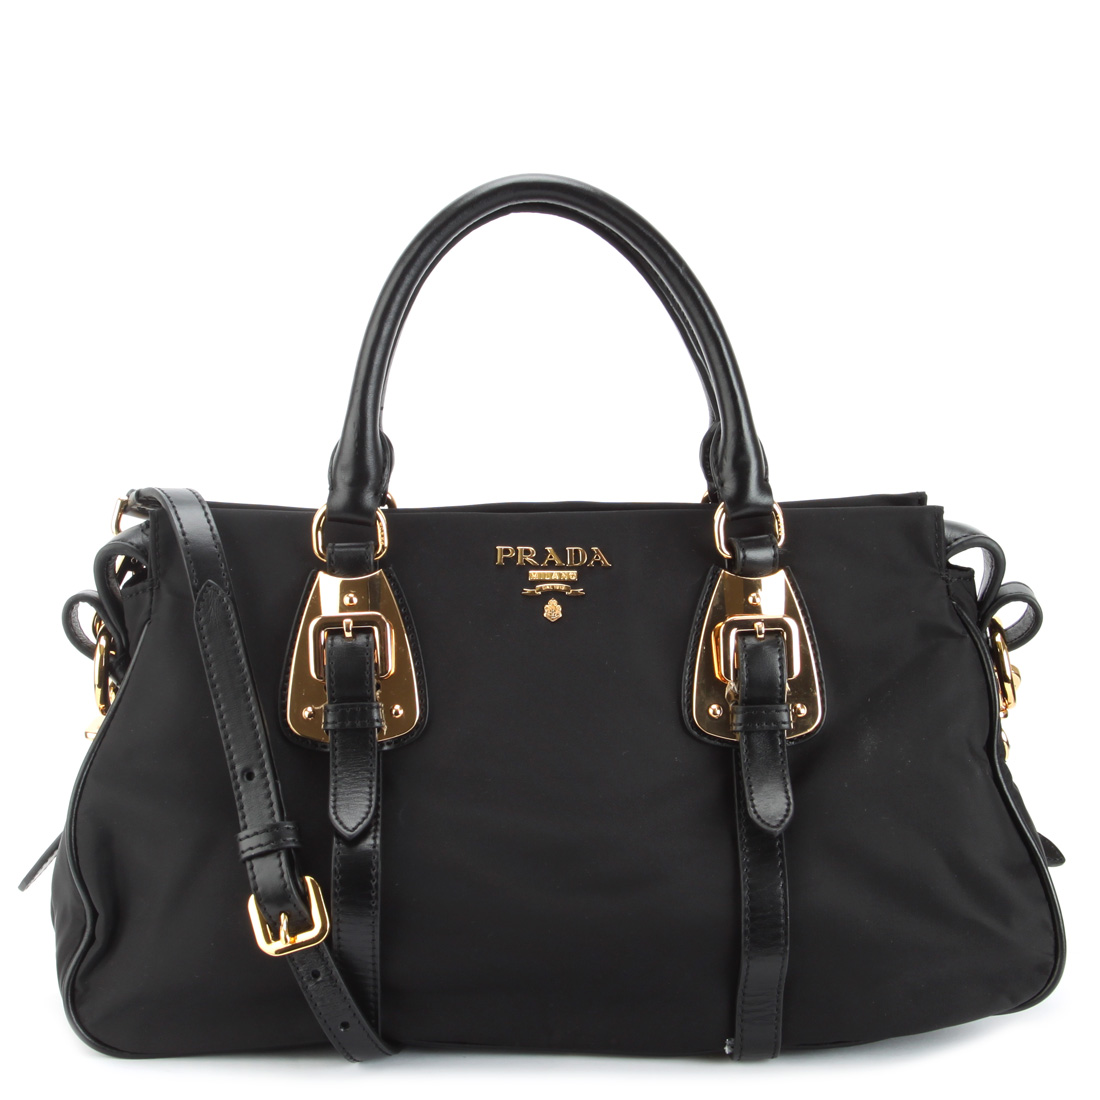 prada handbag retail price  1695 wholesale price  995 41 % off ...